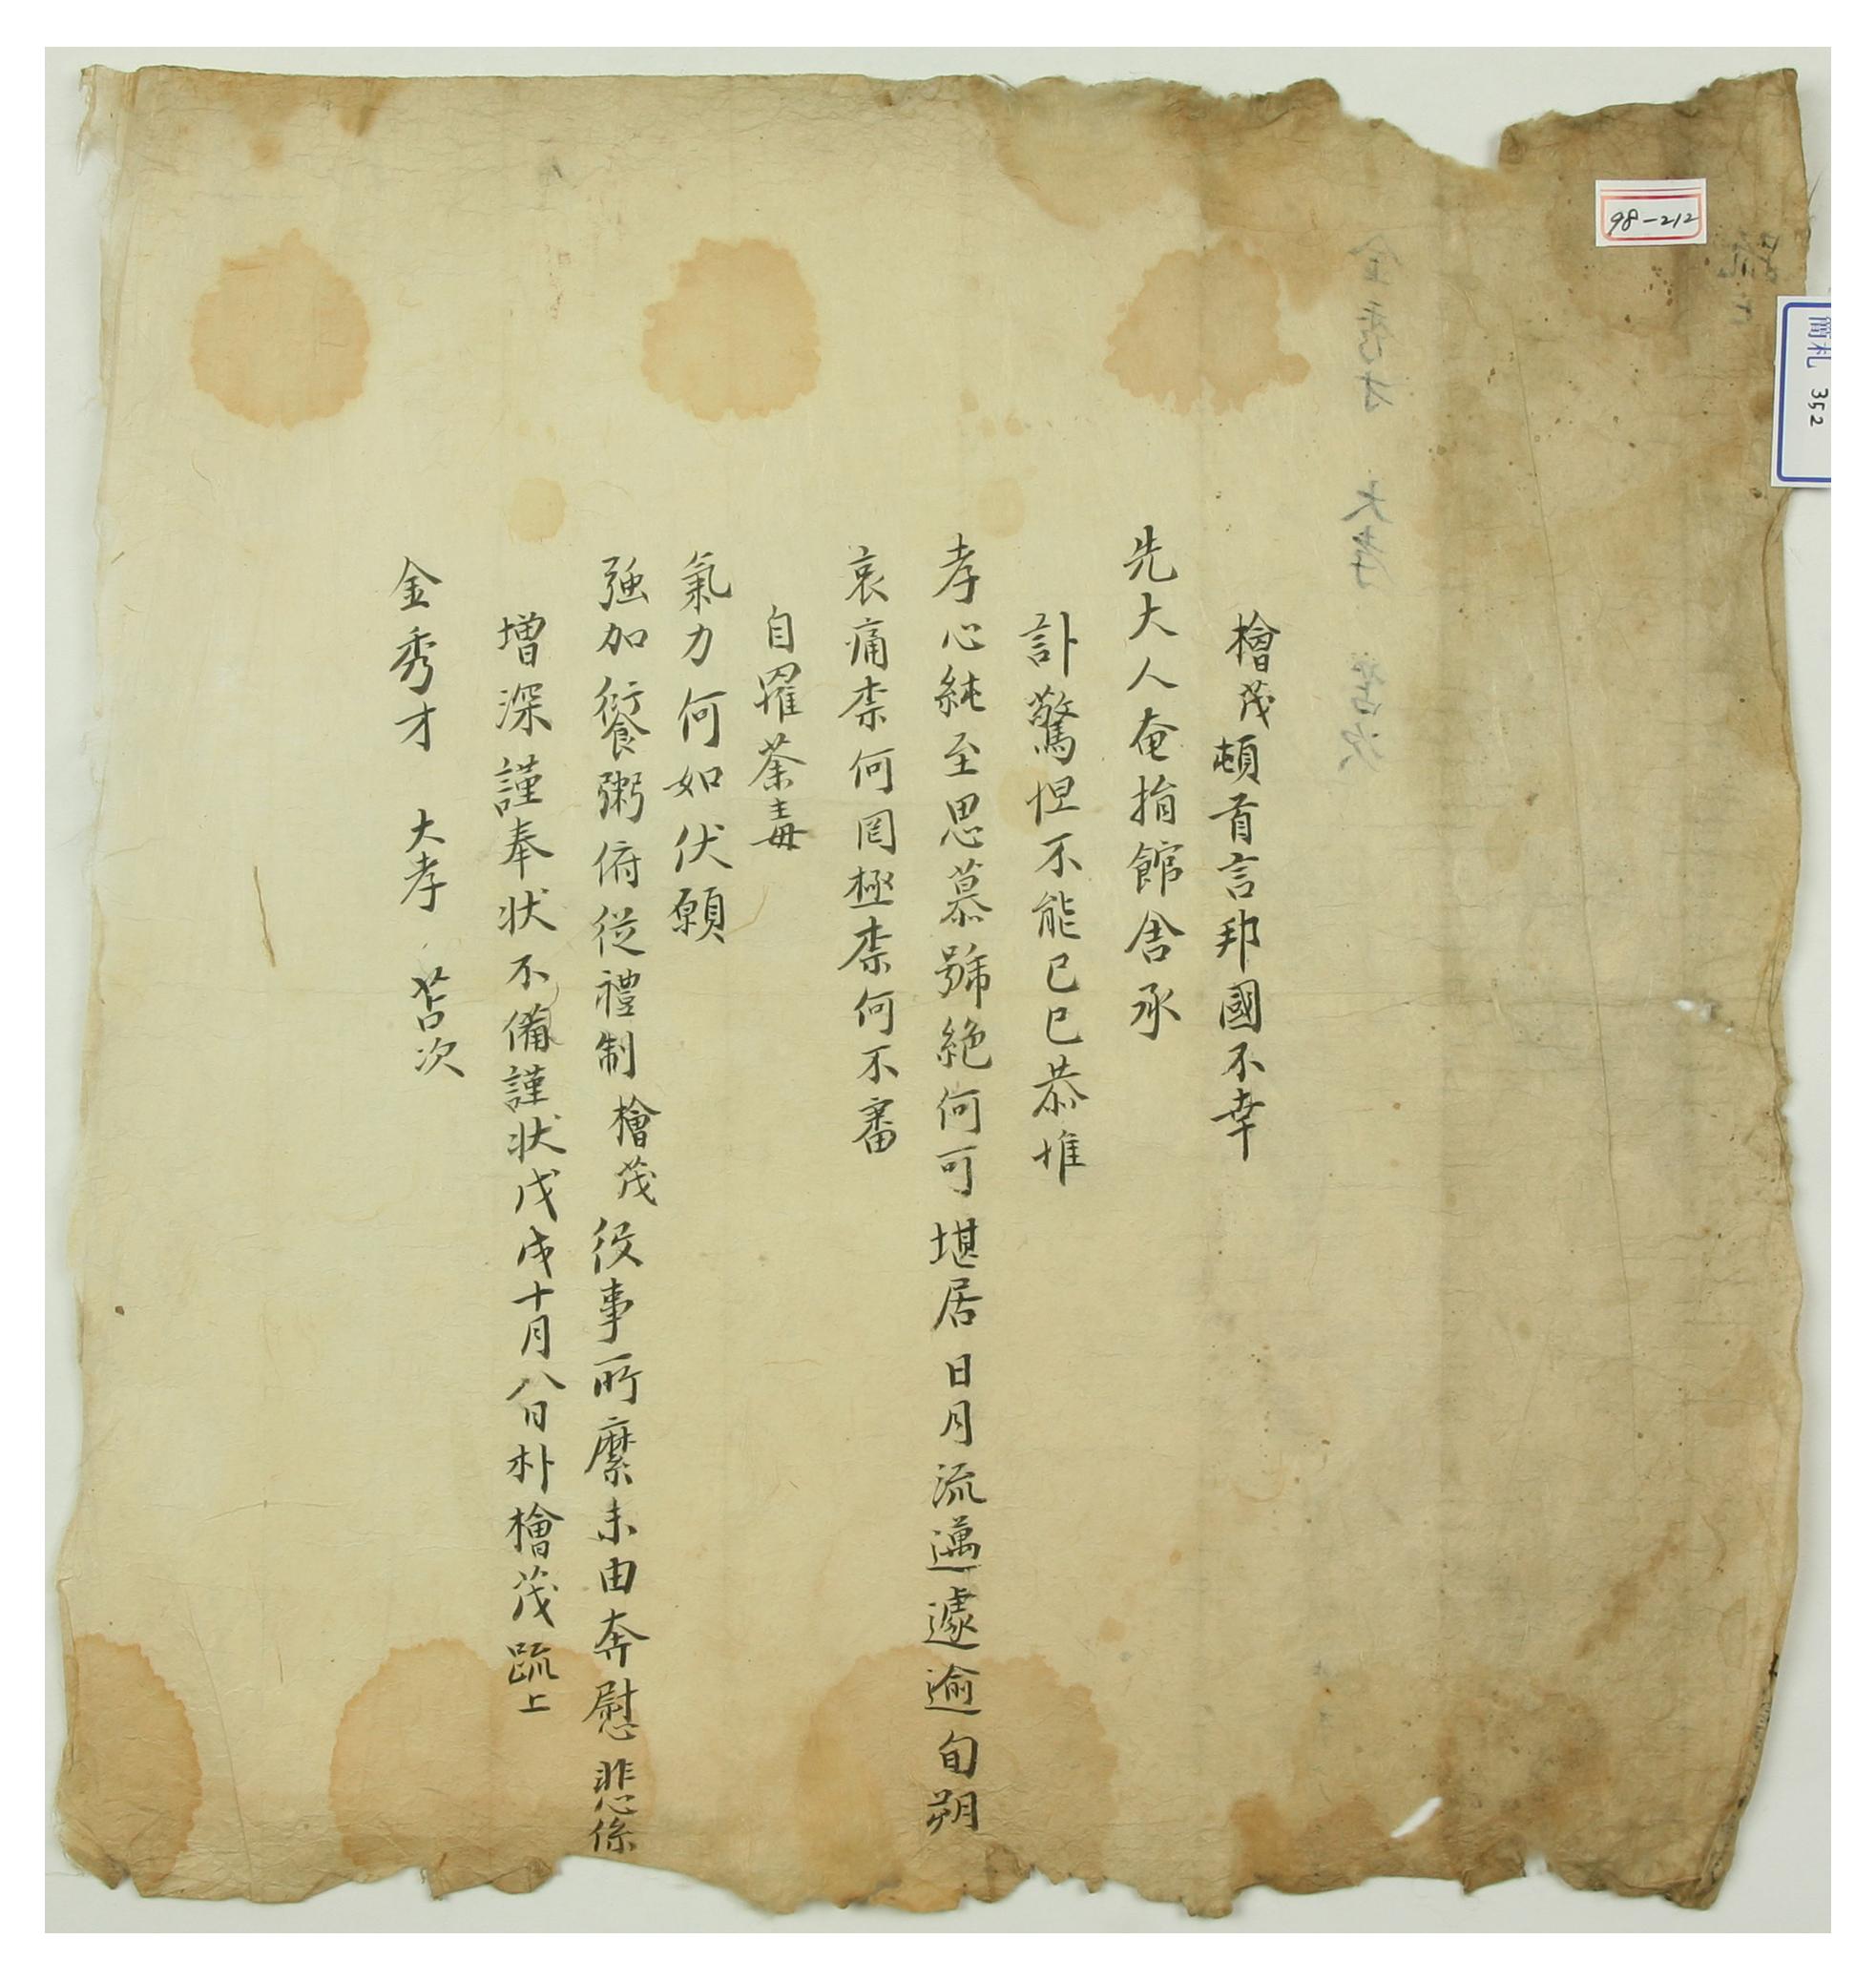 1658년에 박회무가 부친상을 당한 김수재를 위로하기 위해 쓴 위장